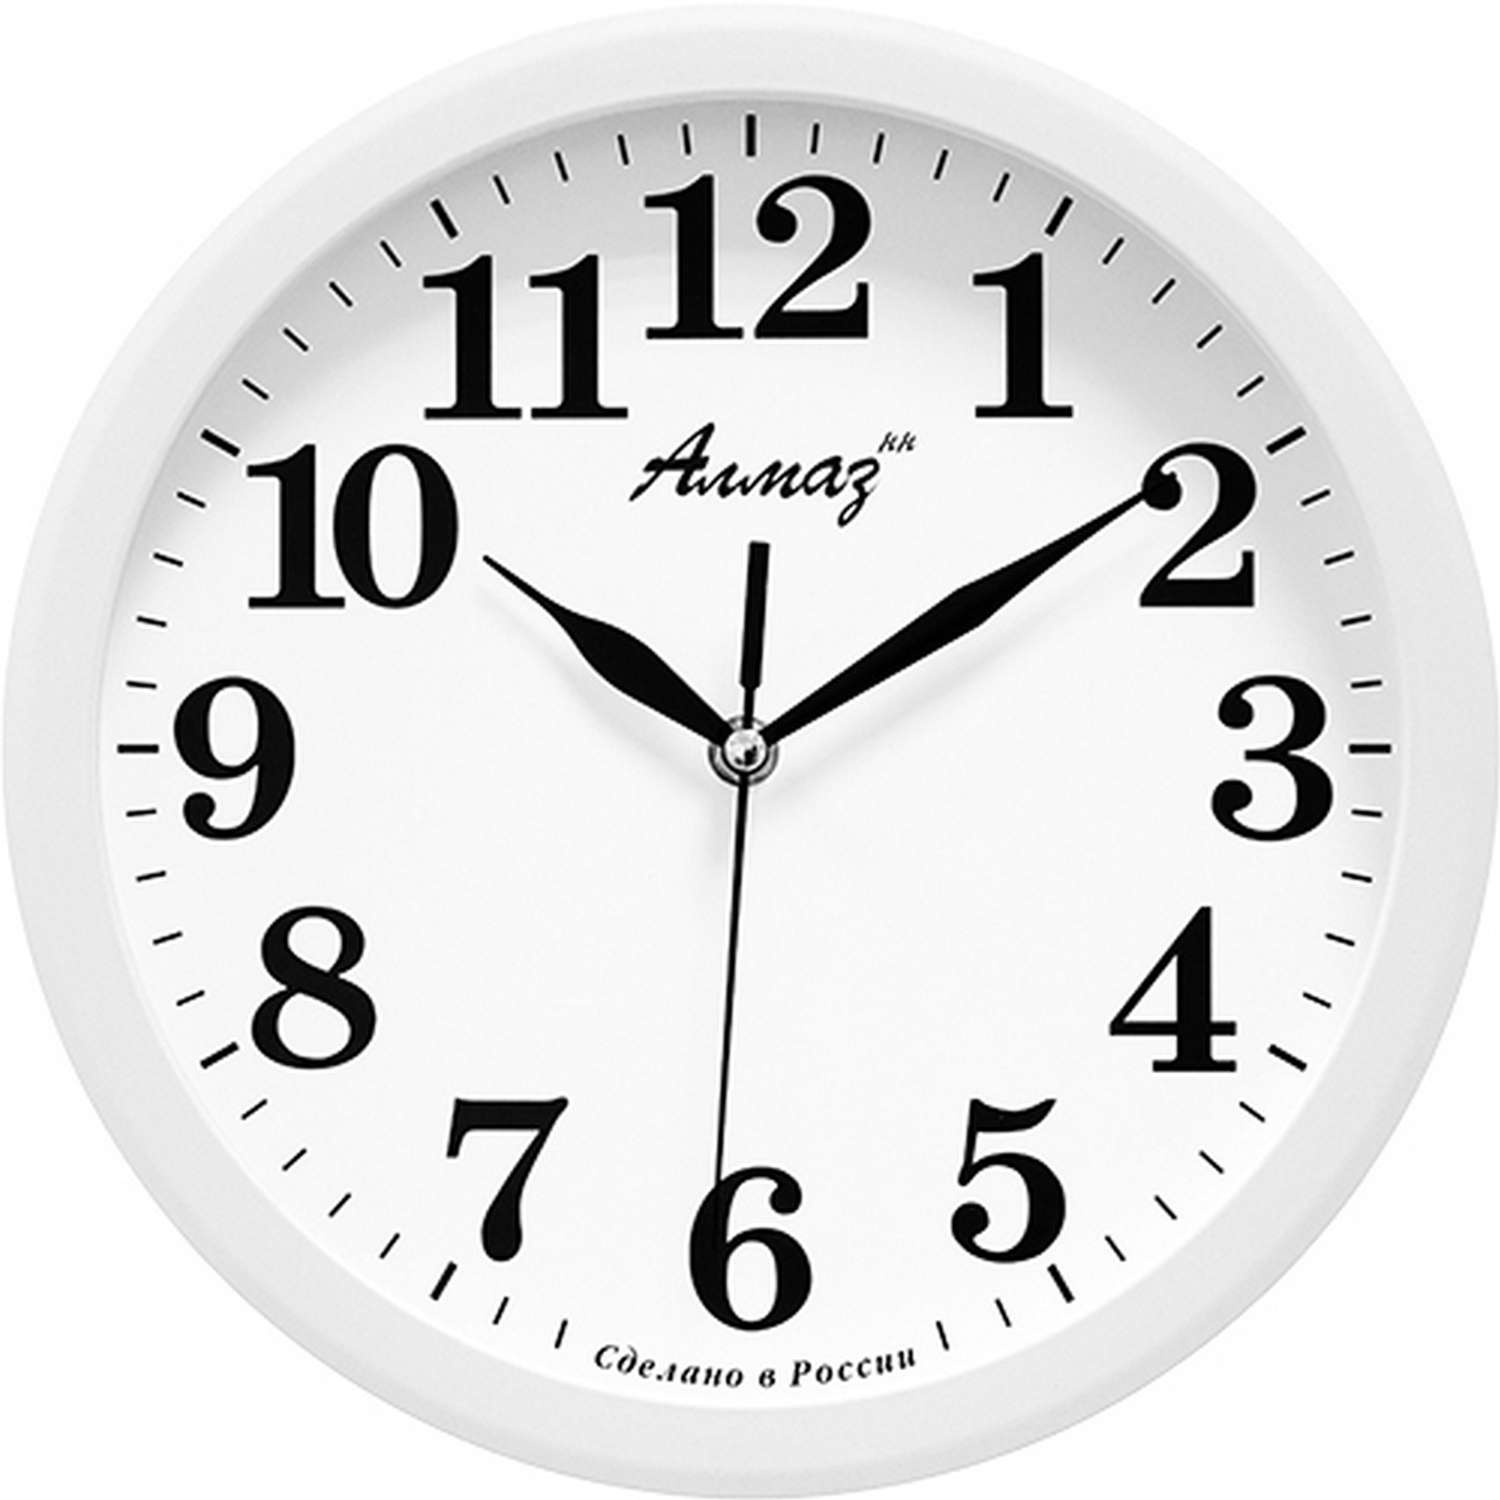 Часы АлмазНН настенные круглые белые 22.5 см - фото 1